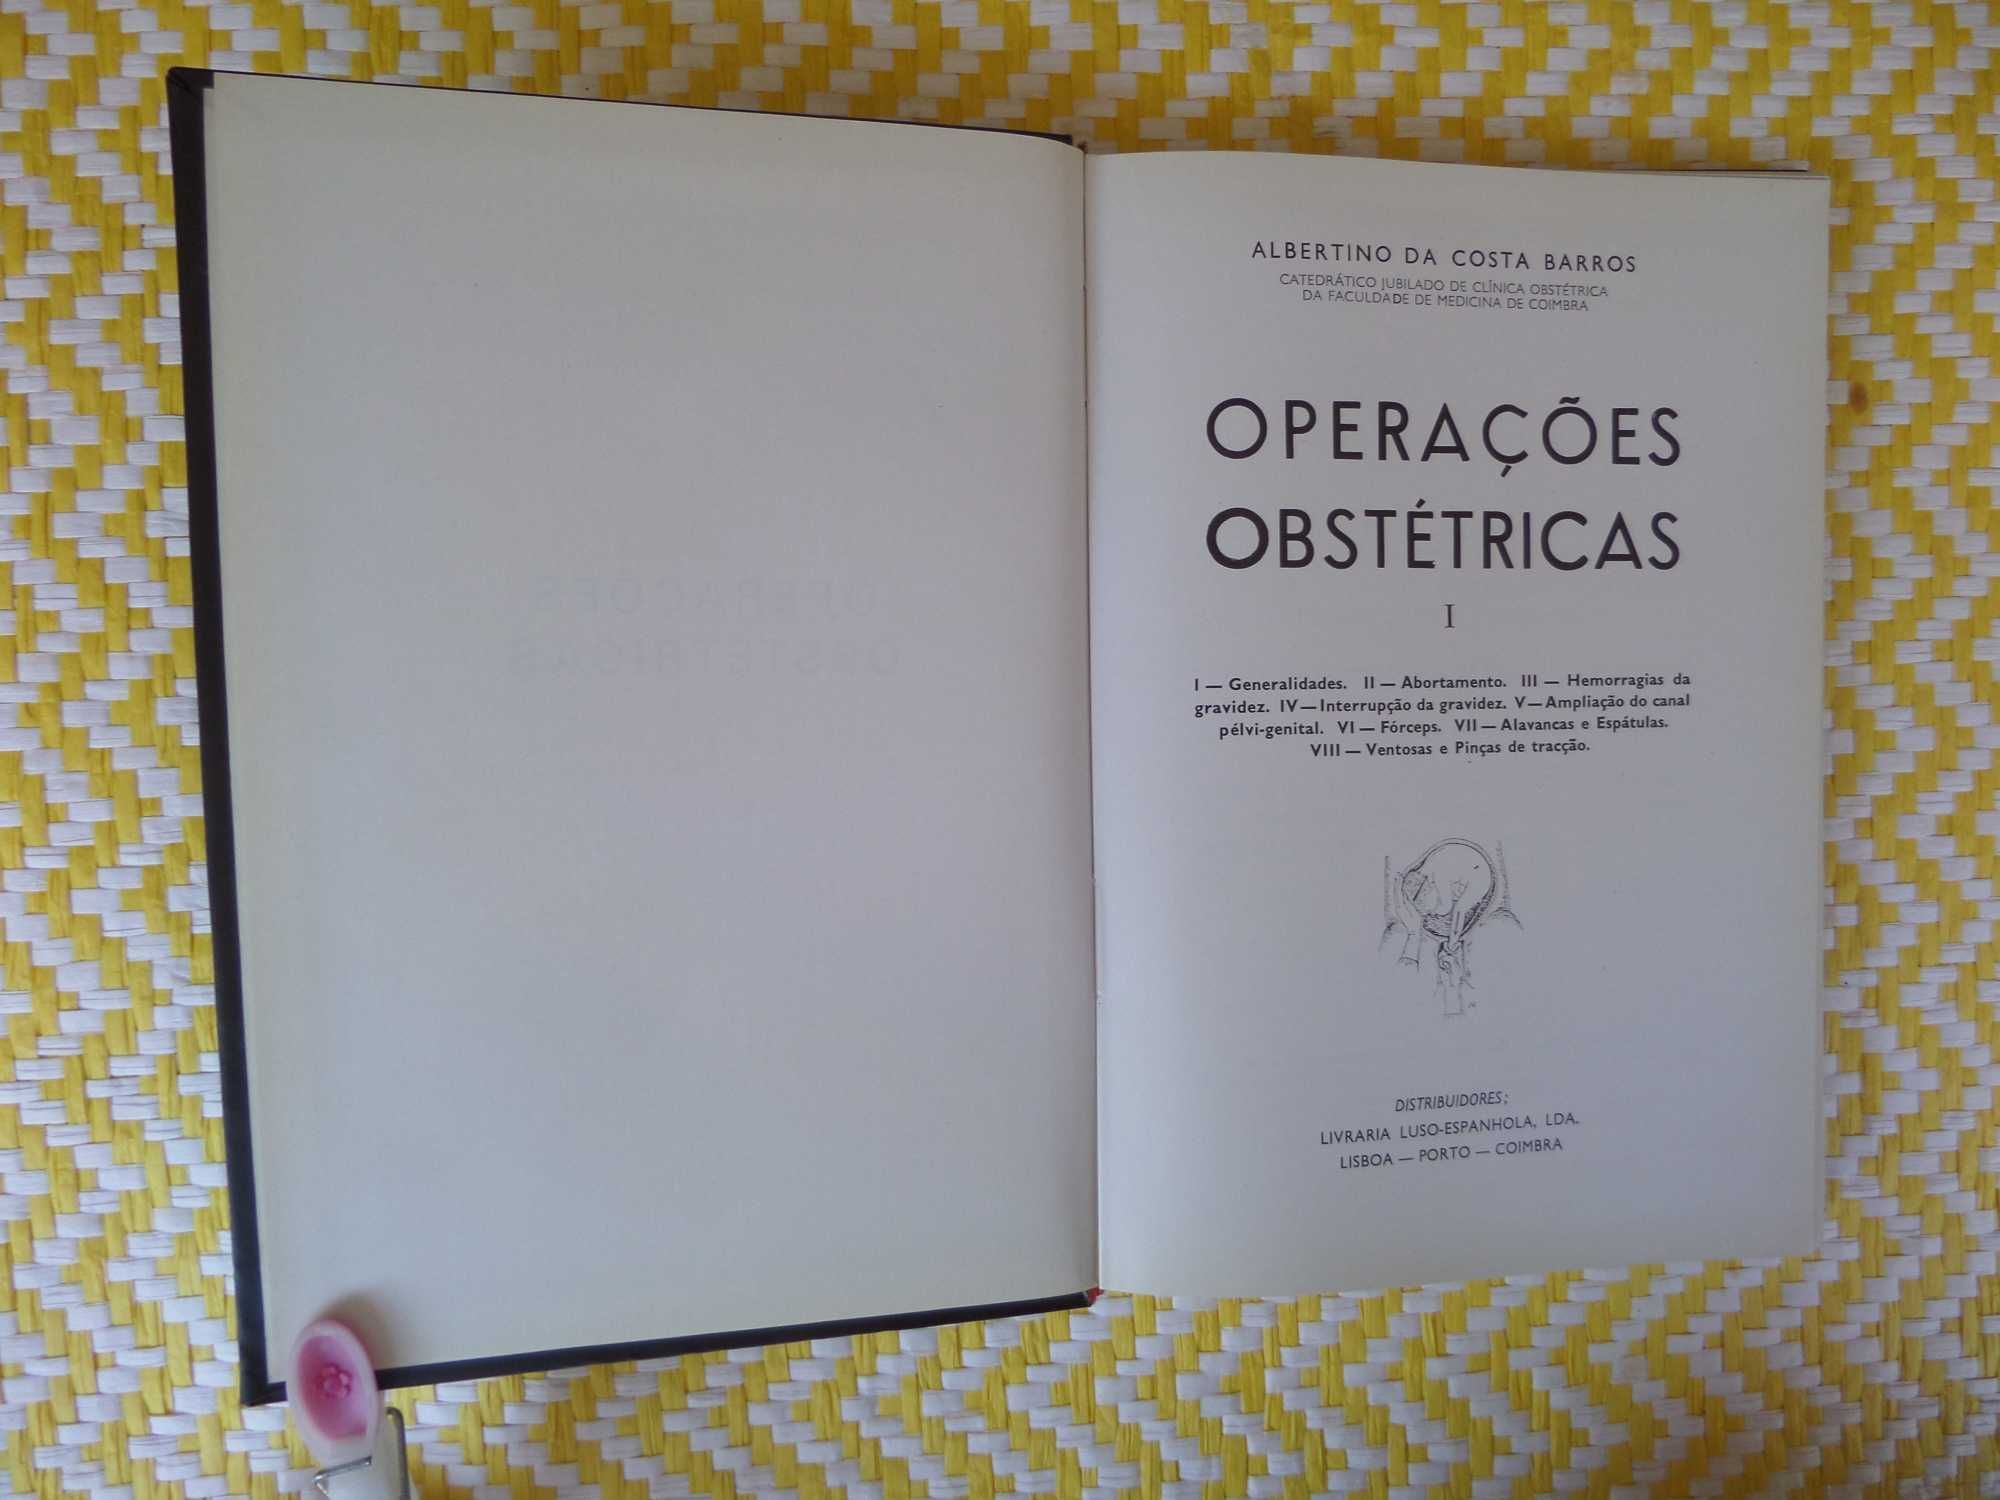 OPERAÇÕES OBSTÉTRICAS
Albertino da Costa Barros